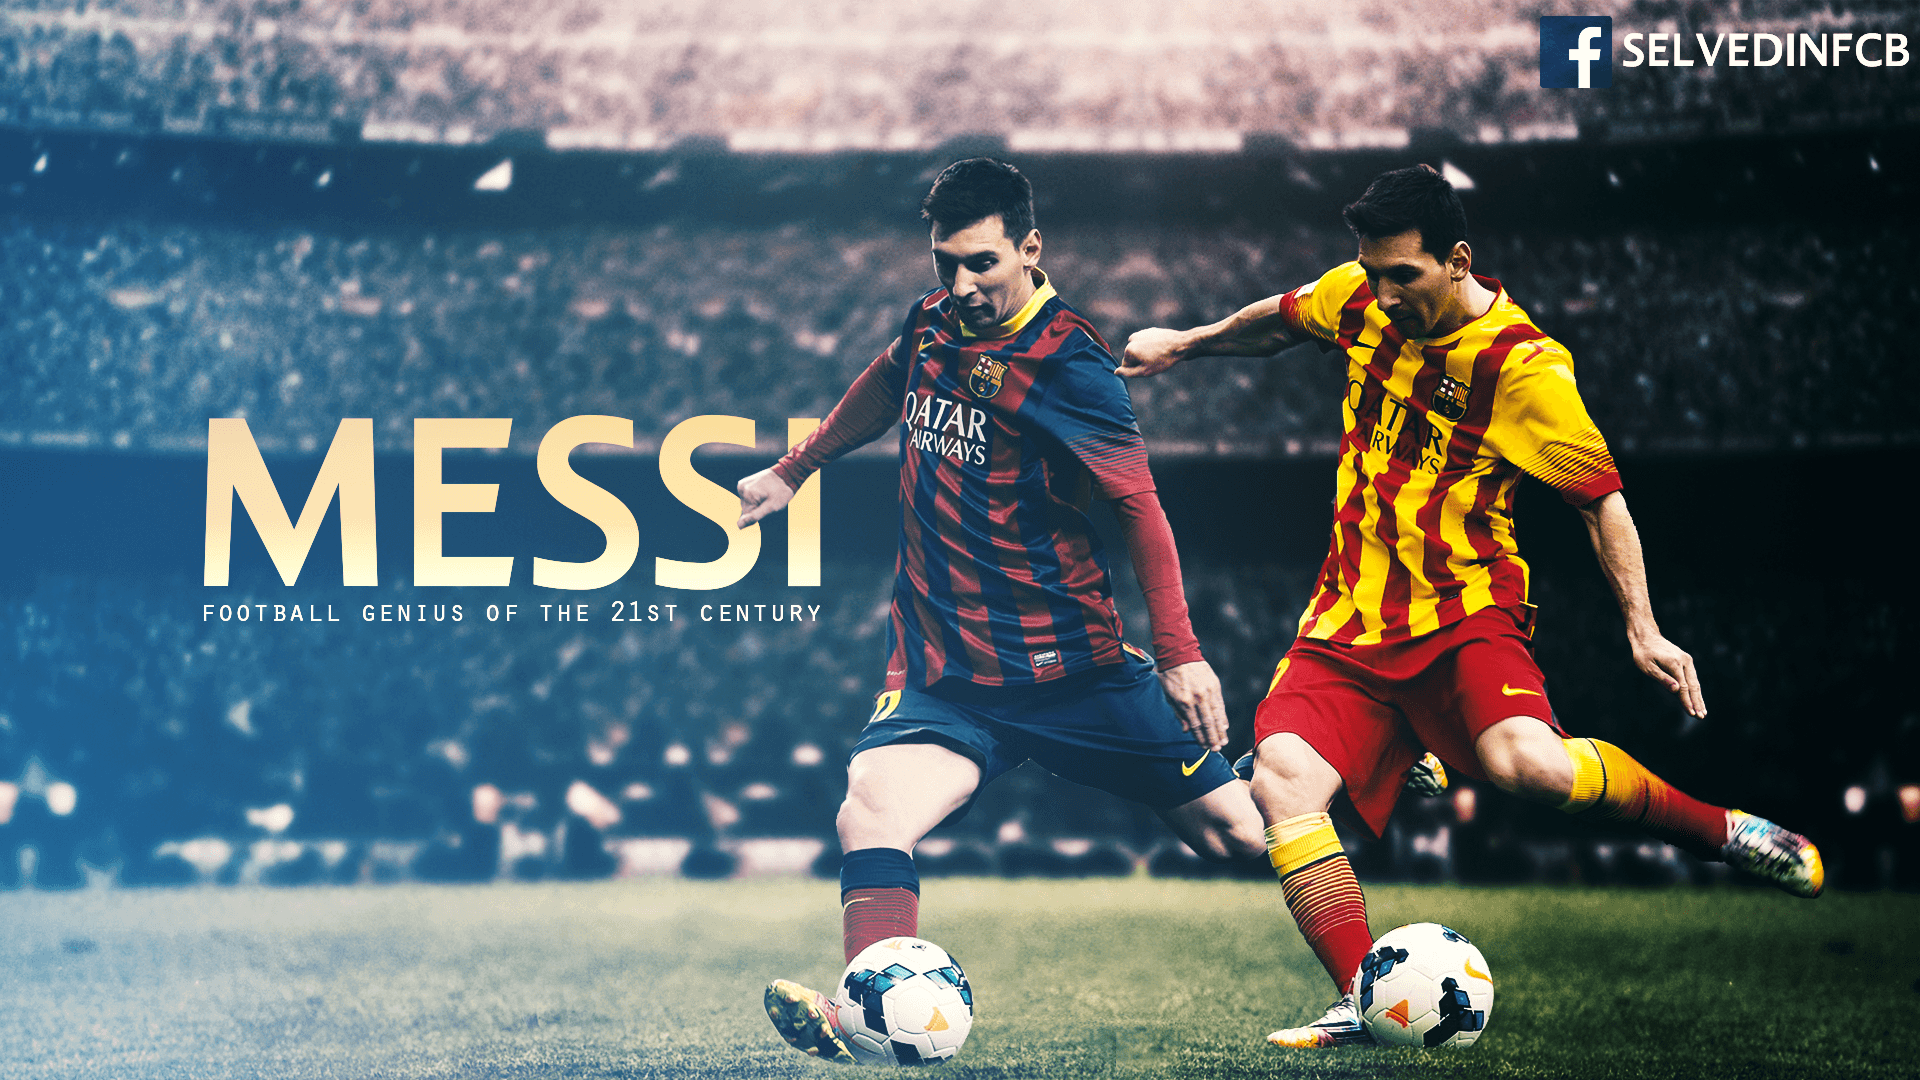 Aquellacanciondelos80: Lionel Messi 2014 Wallpaper Image